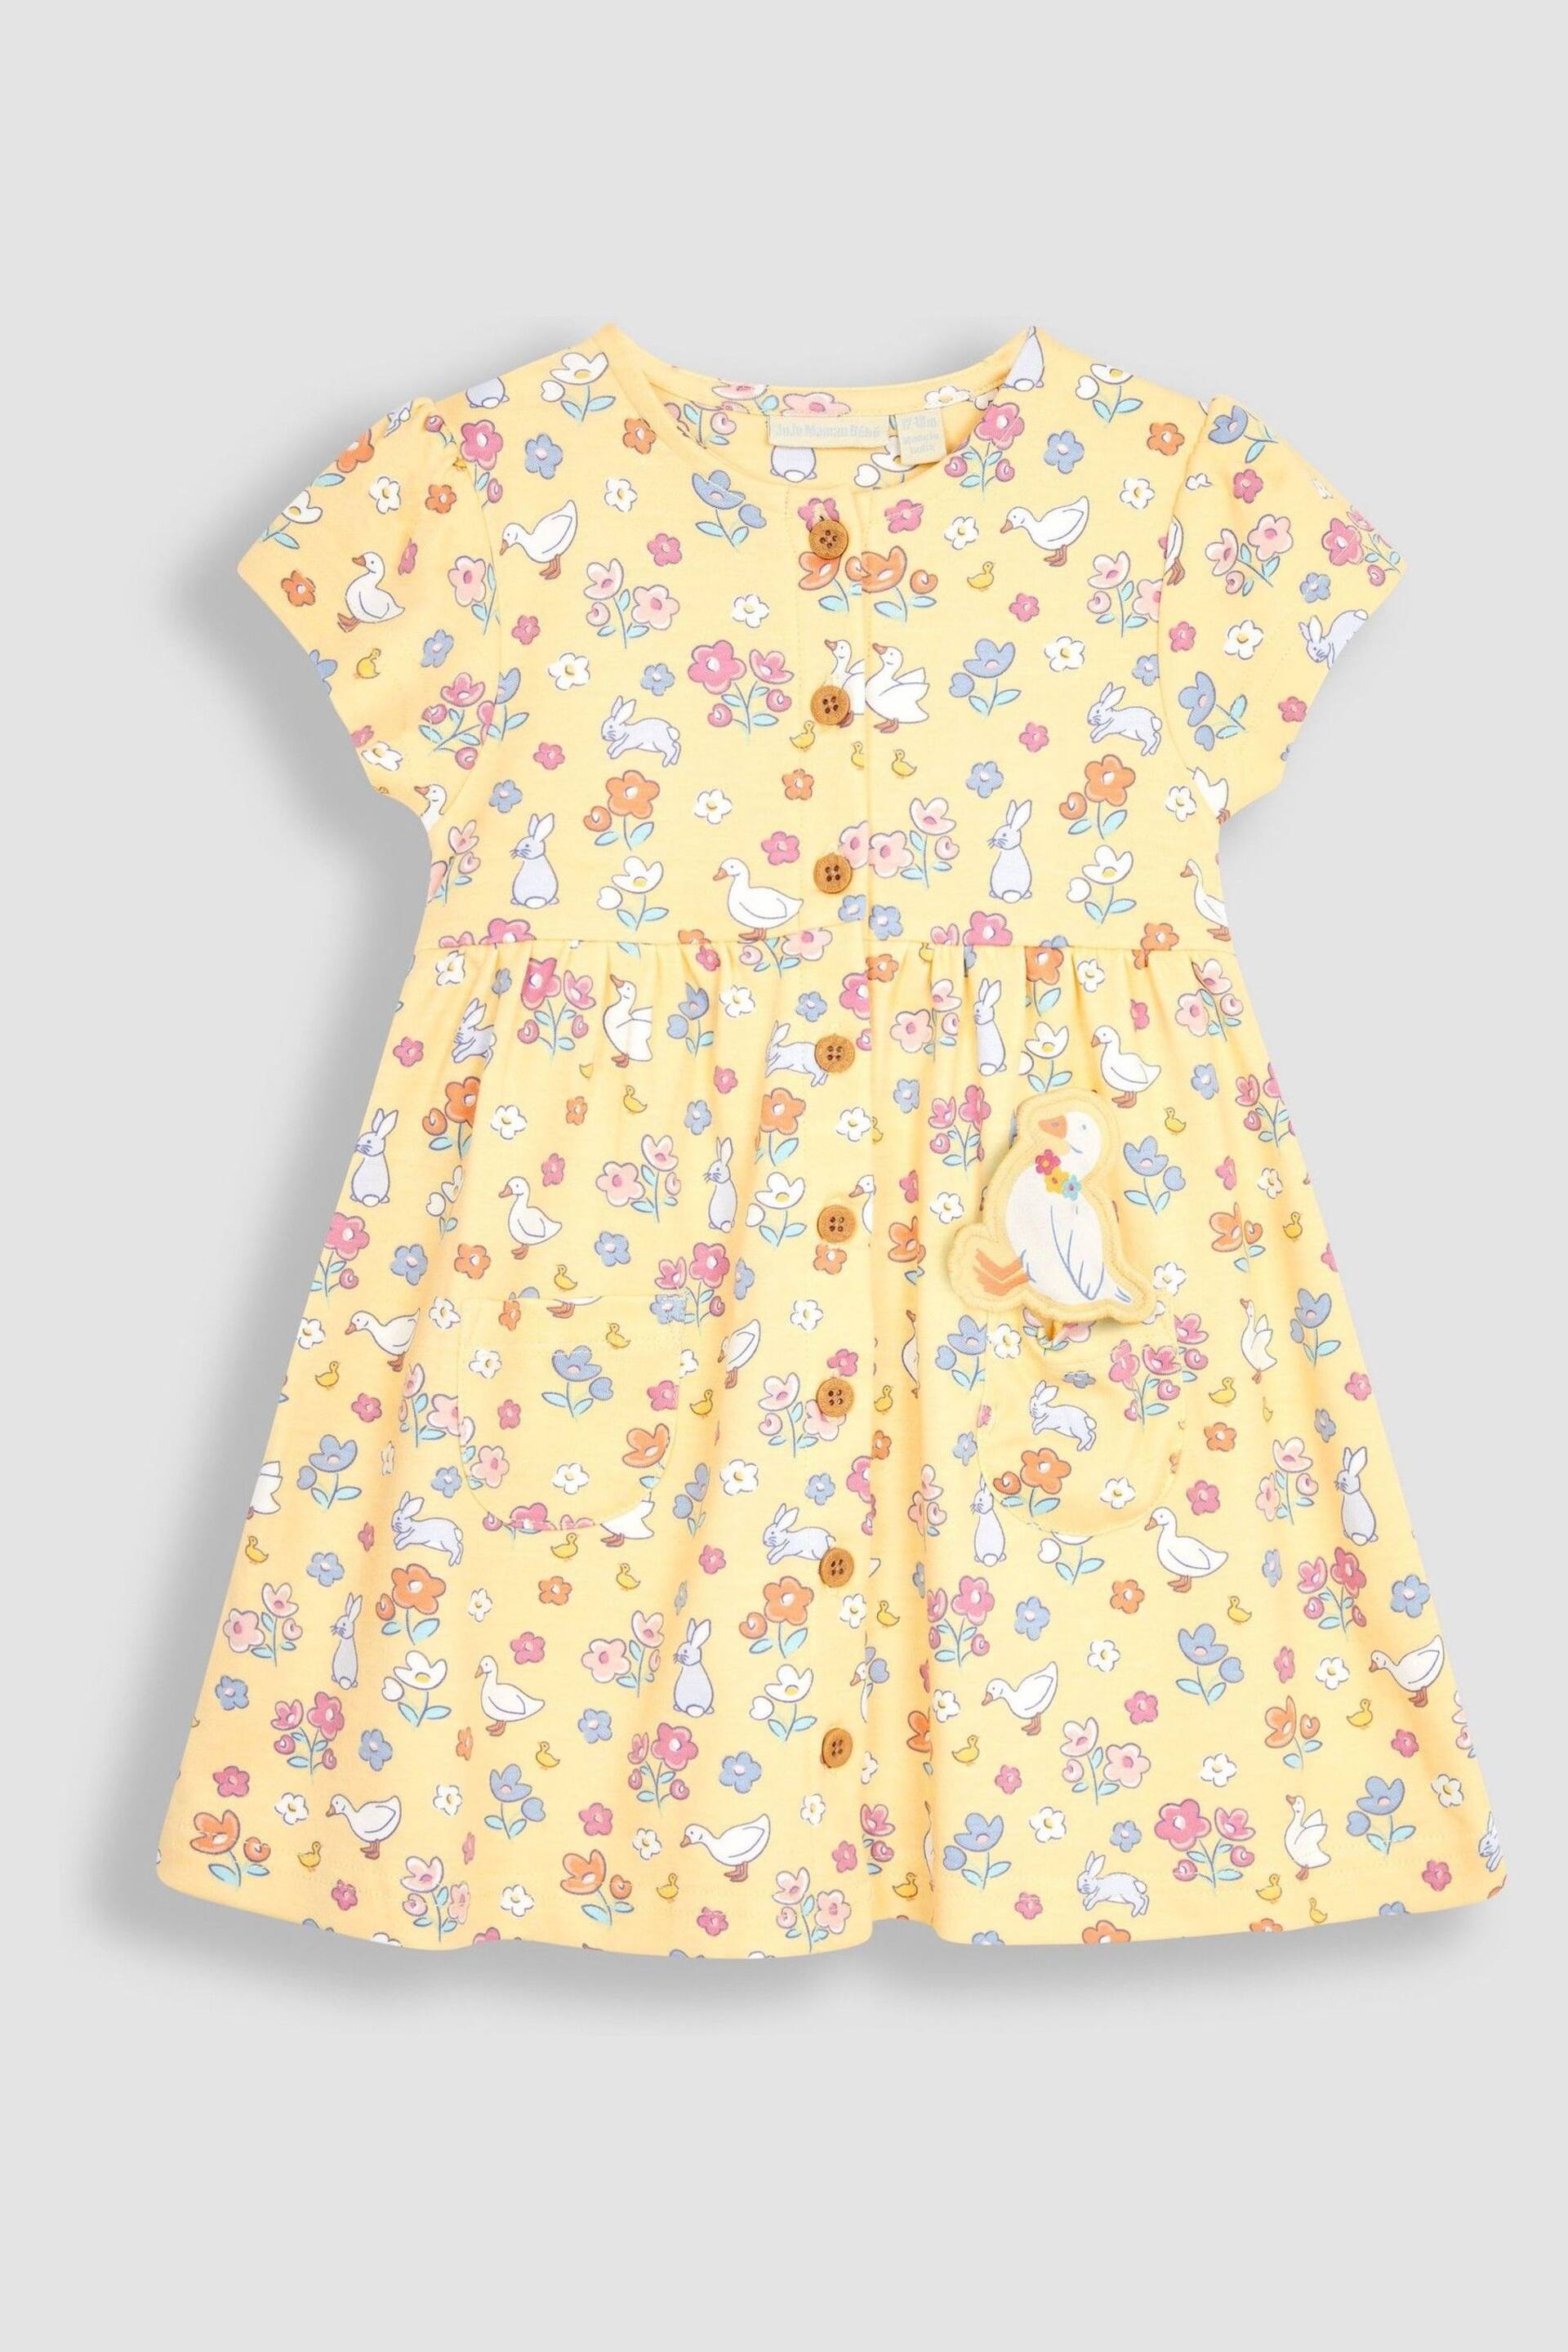 JoJo Maman Bébé Yellow Bunny & Duck Button Through Pet In Pocket Jersey Dress - Image 3 of 3